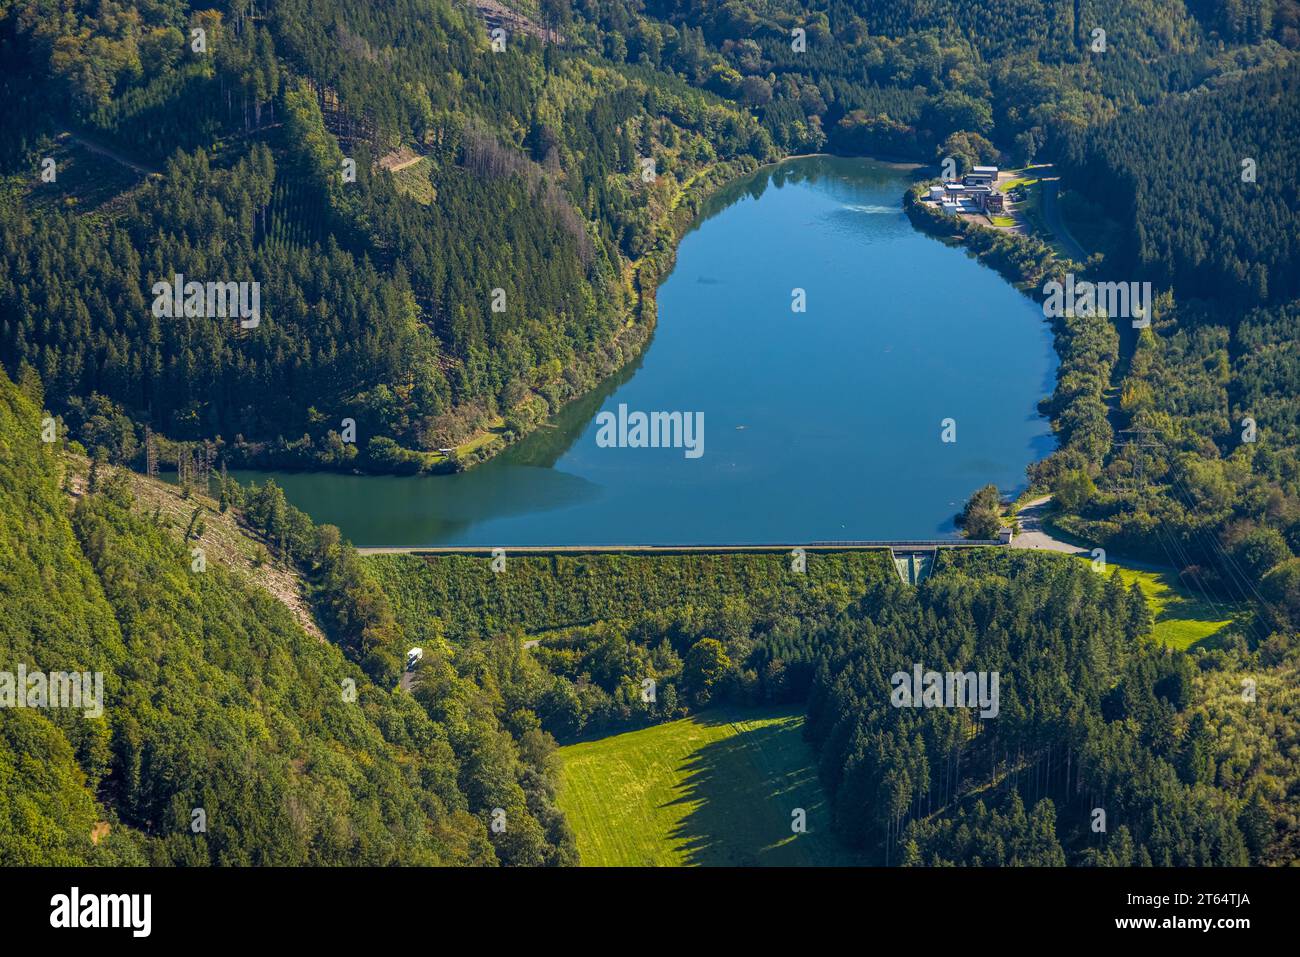 Vista aerea, diga di Glingebach e muro della diga in un paesaggio collinare boscoso, centrale elettrica di stoccaggio pompata di Rönkhausen, Rönkhausen, Finnentrop, Sauerland, Nord Foto Stock